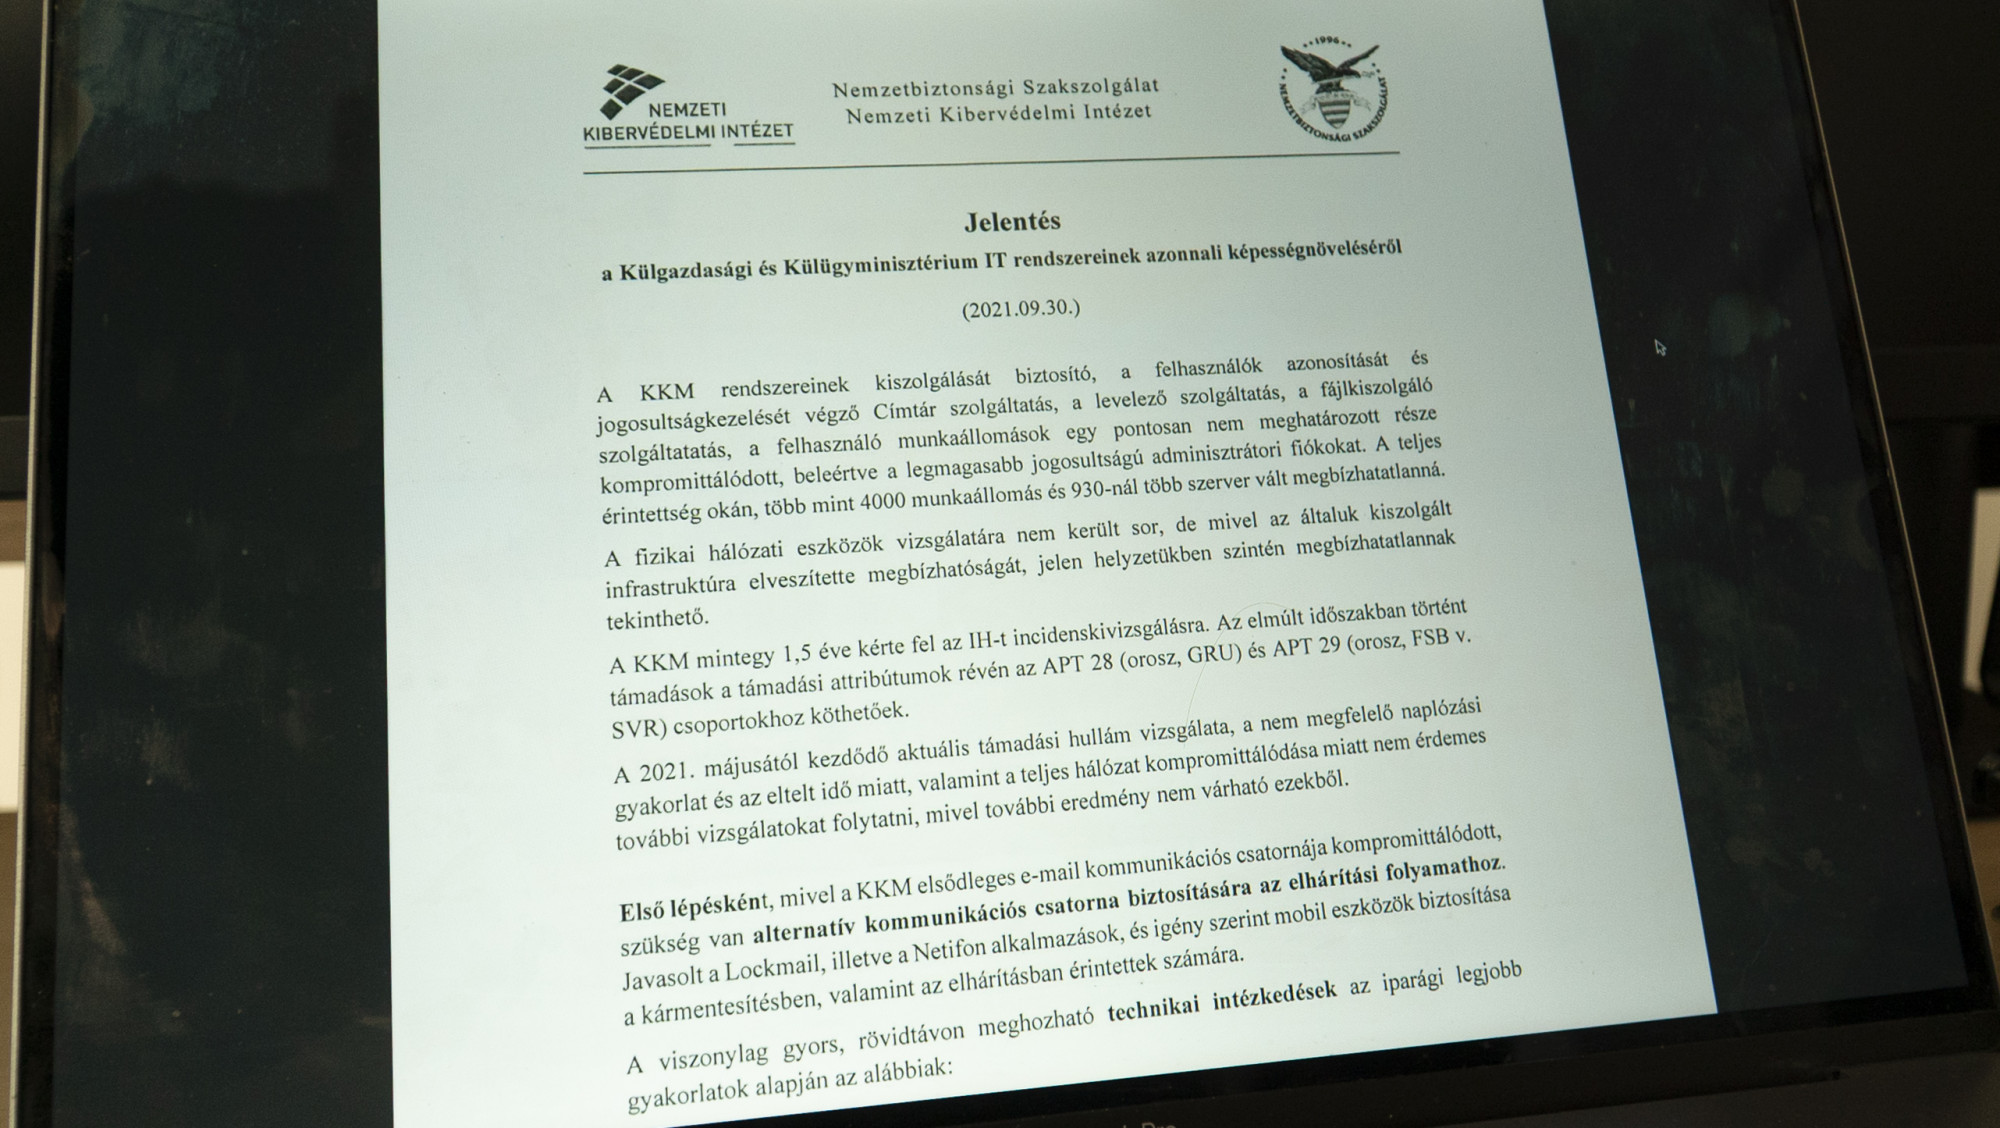 Részlet Szabó Hedvig NBSZ főigazgató leveléből, amelyet az akkor még a külügyben dolgozó Vargha Tamásnak, a polgári hírszerzésért felelős államtitkárnak címzett.